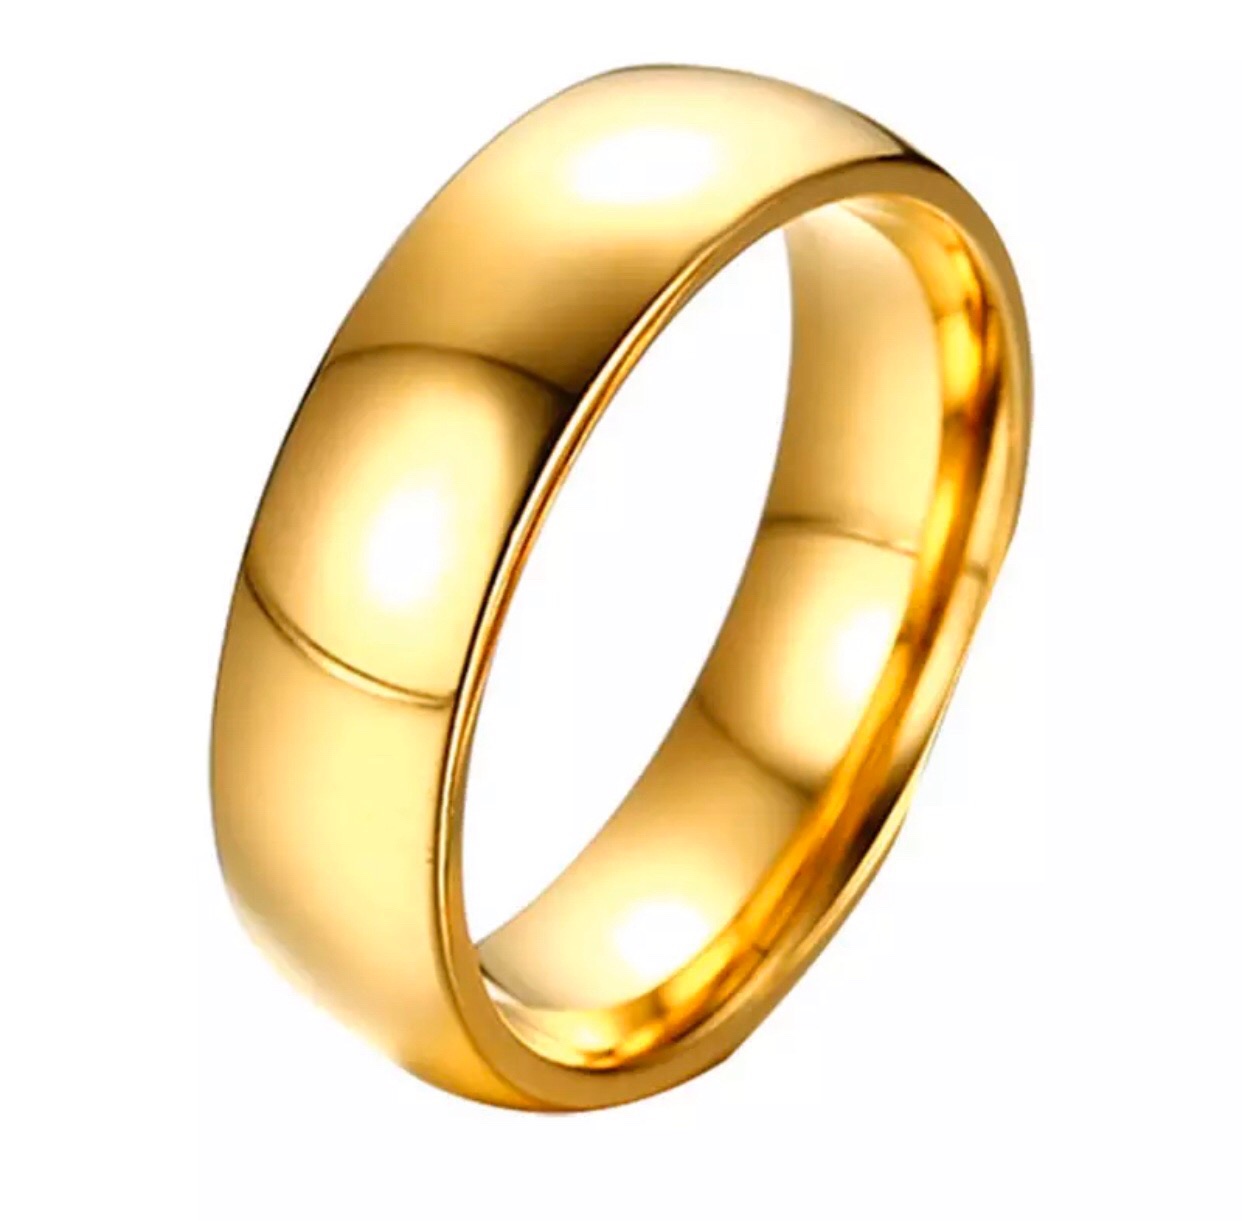 Dalma arany színű nemesacél női gyűrű